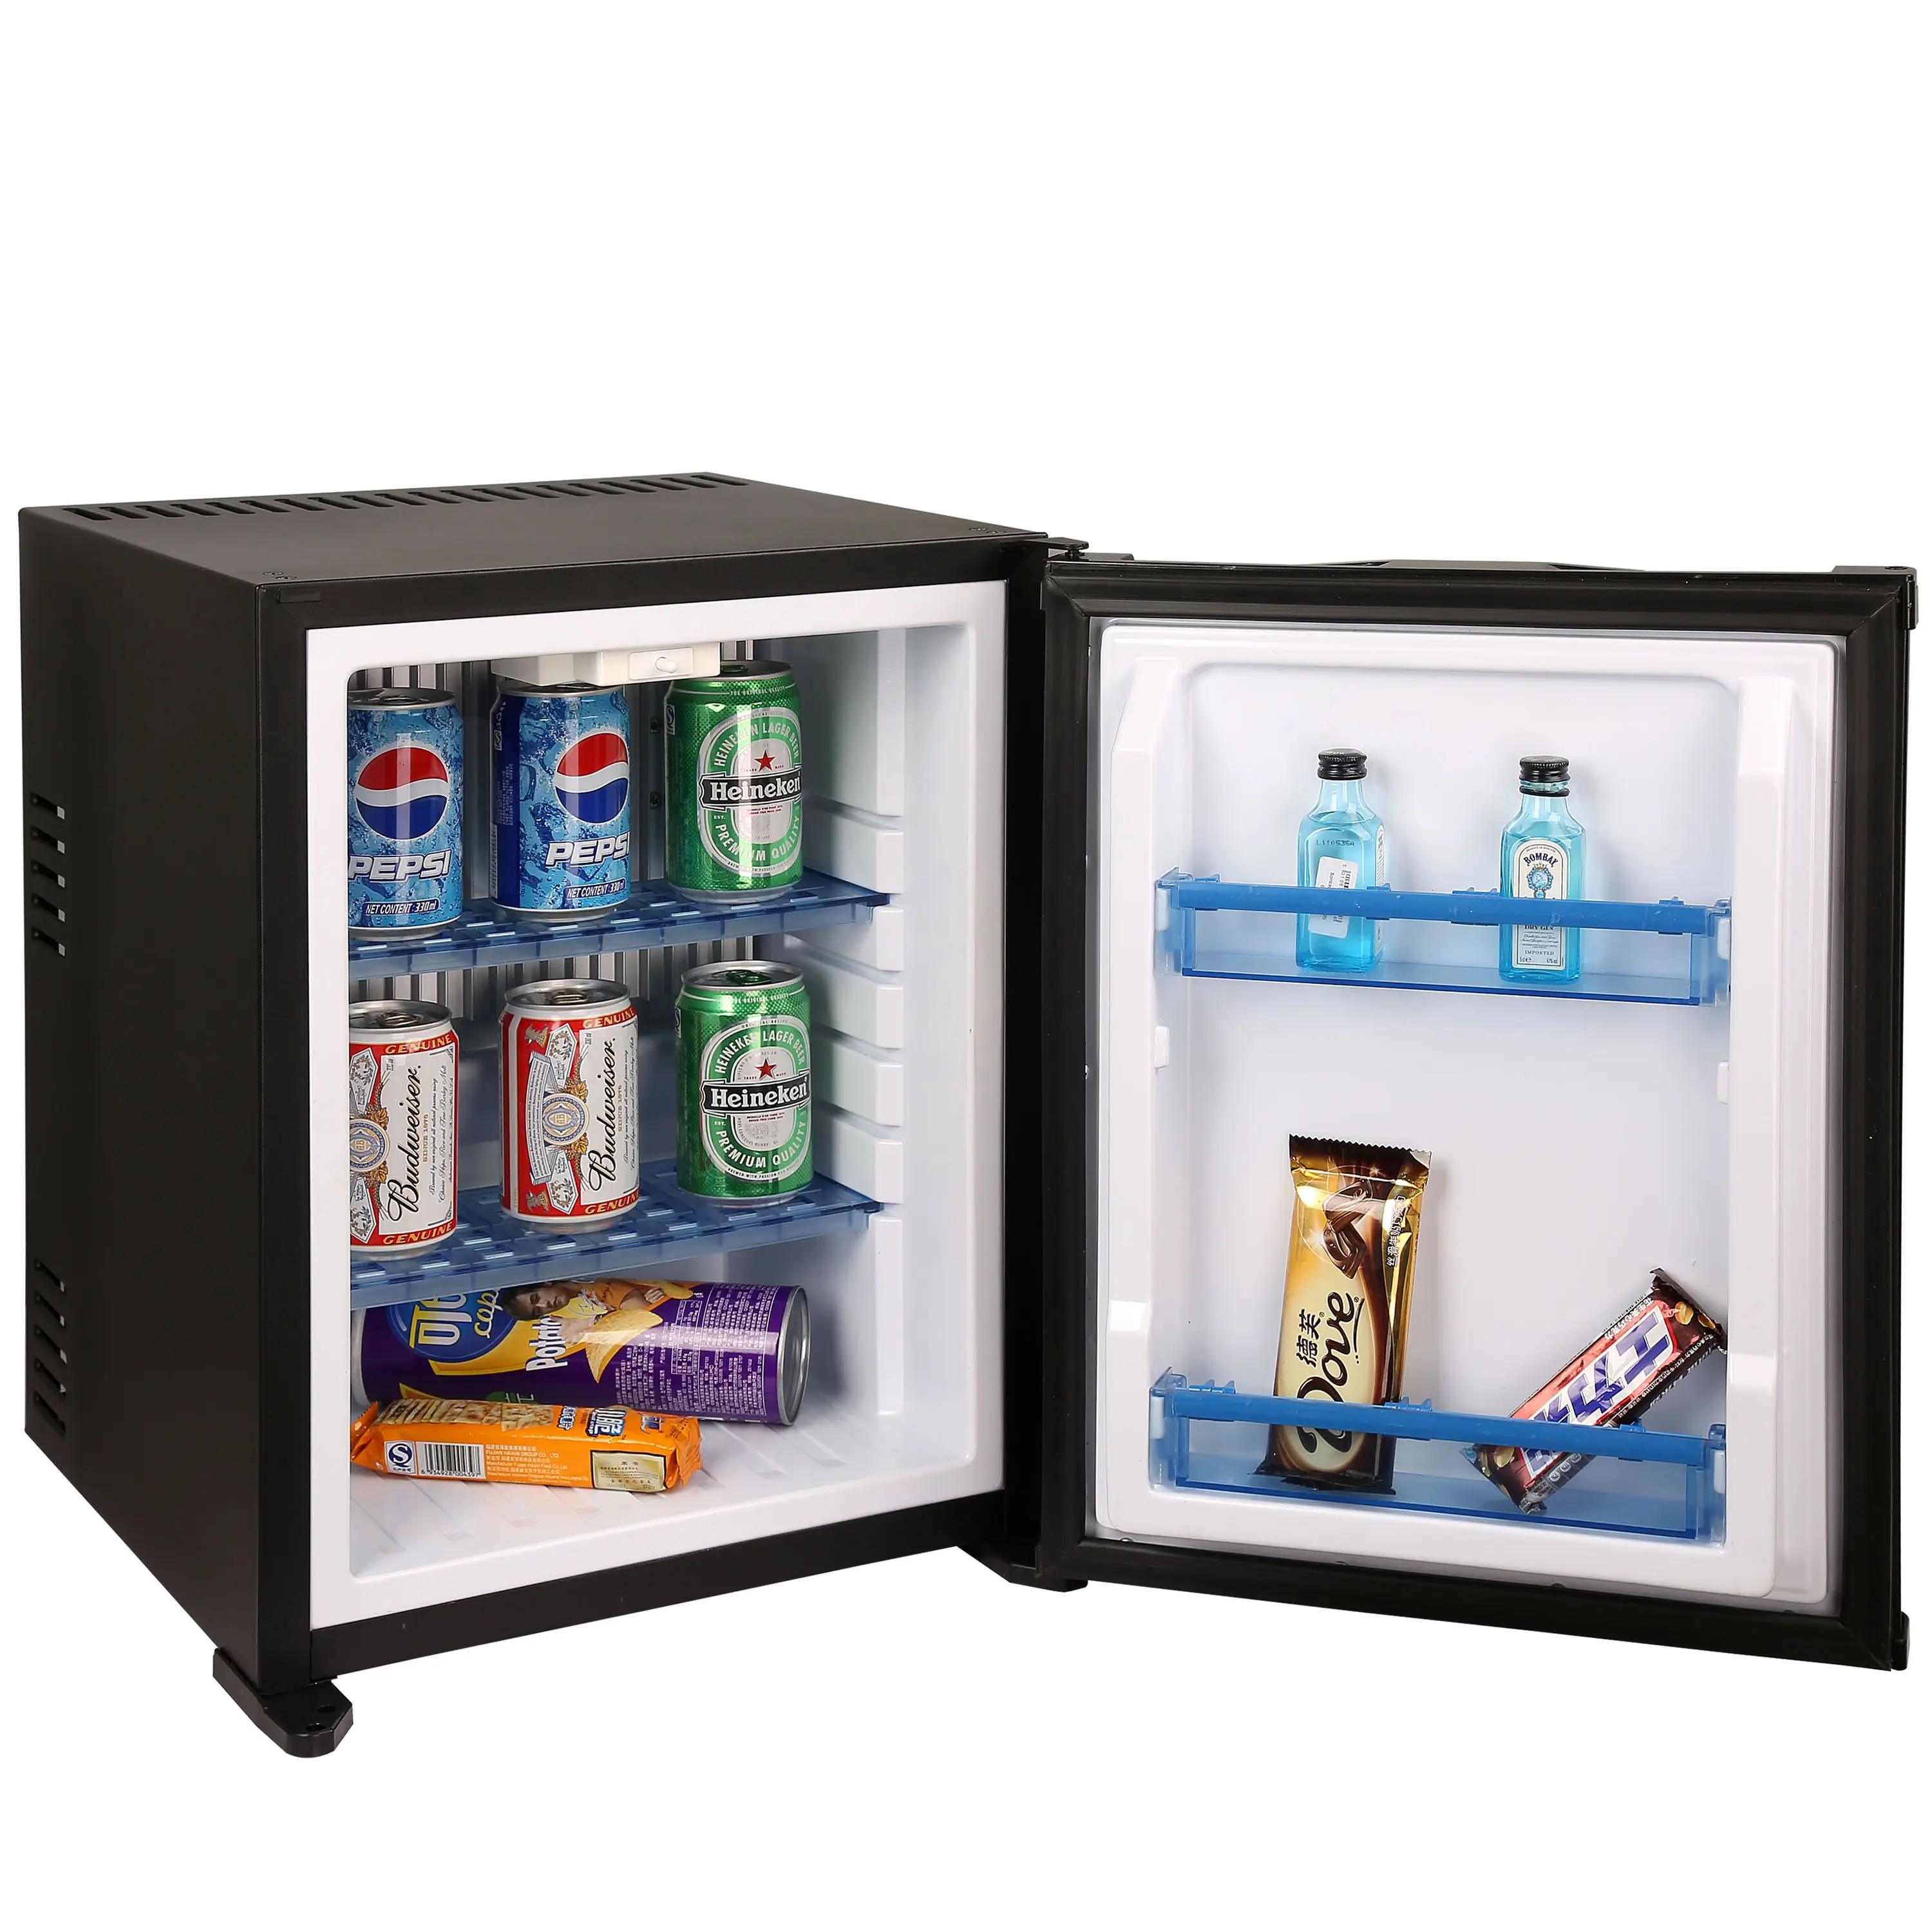 UNIBAR 새로운 프로모션 경쟁력있는 가격 작은 바 냉장고 호텔 냉장고 냉장고 미니 냉장고 1 조각 공장 중국에서